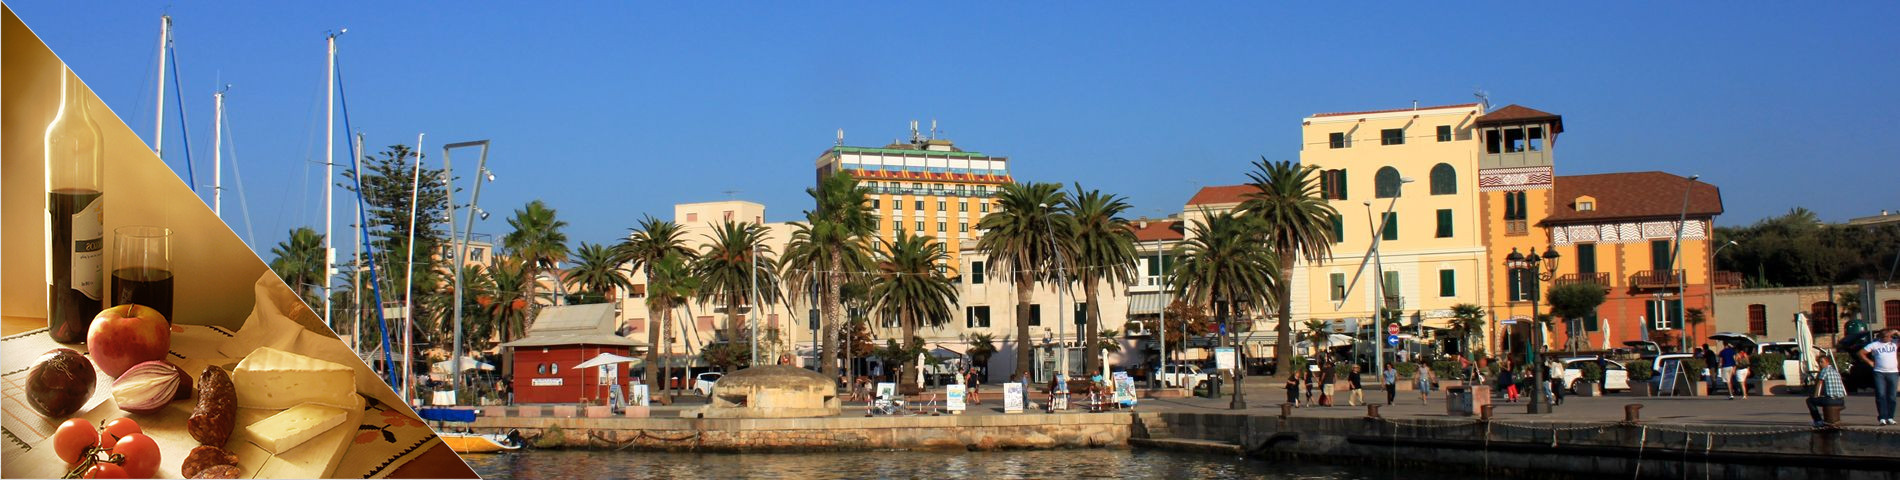 Alguer (Sardenya) - Italià i Cultura